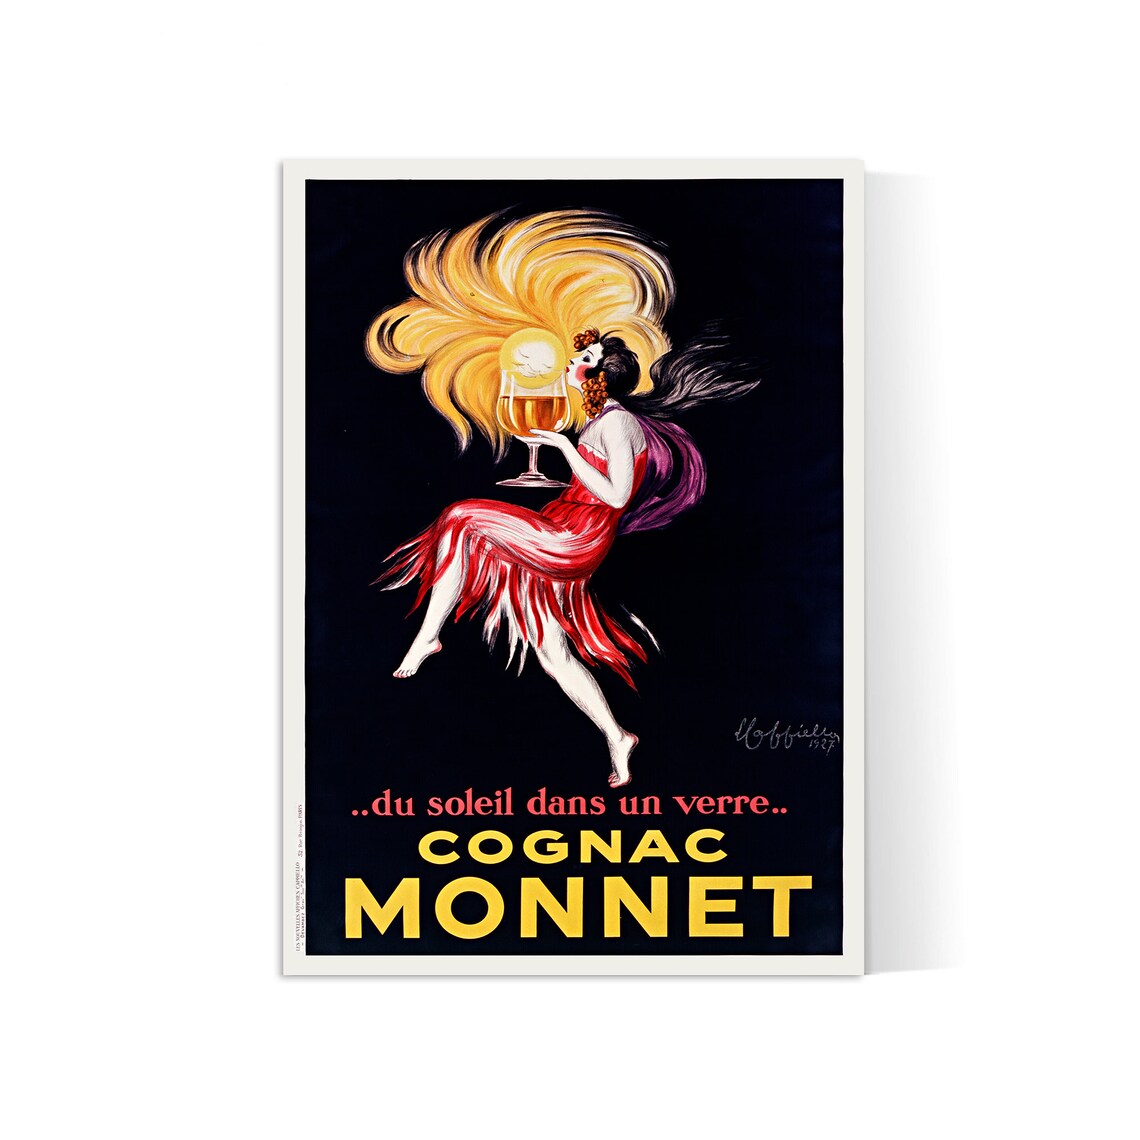 Vintage alcohol poster "Cognac Monnet" Leonetto Cappiello - High Definition - matte paper 230gr/m2